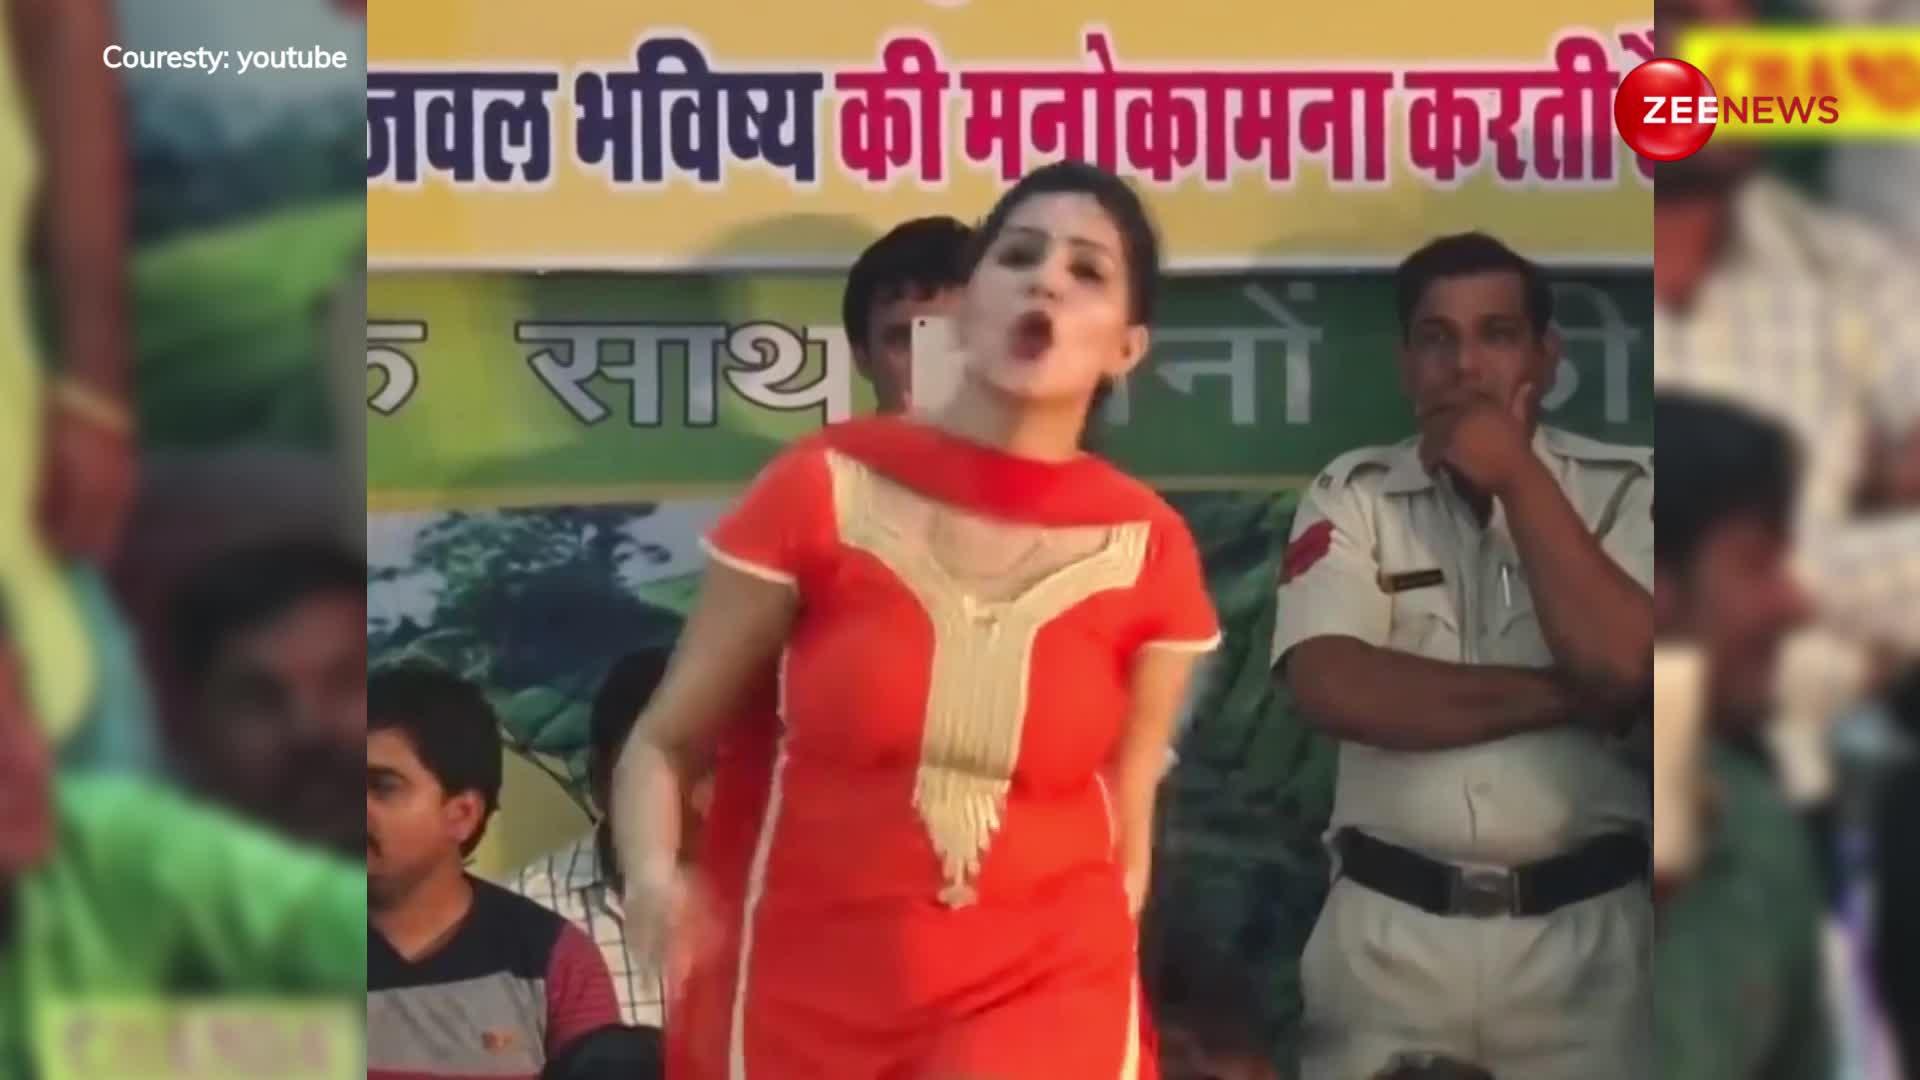 'मैं सरकारी में पड़ा हुआ मेरा मजनू नाम कटा हुआ' गाना बजते ही रात वाले स्टेज शो में Sapna Chaudhary ने दिखाया अपना तड़क-भड़क डांस